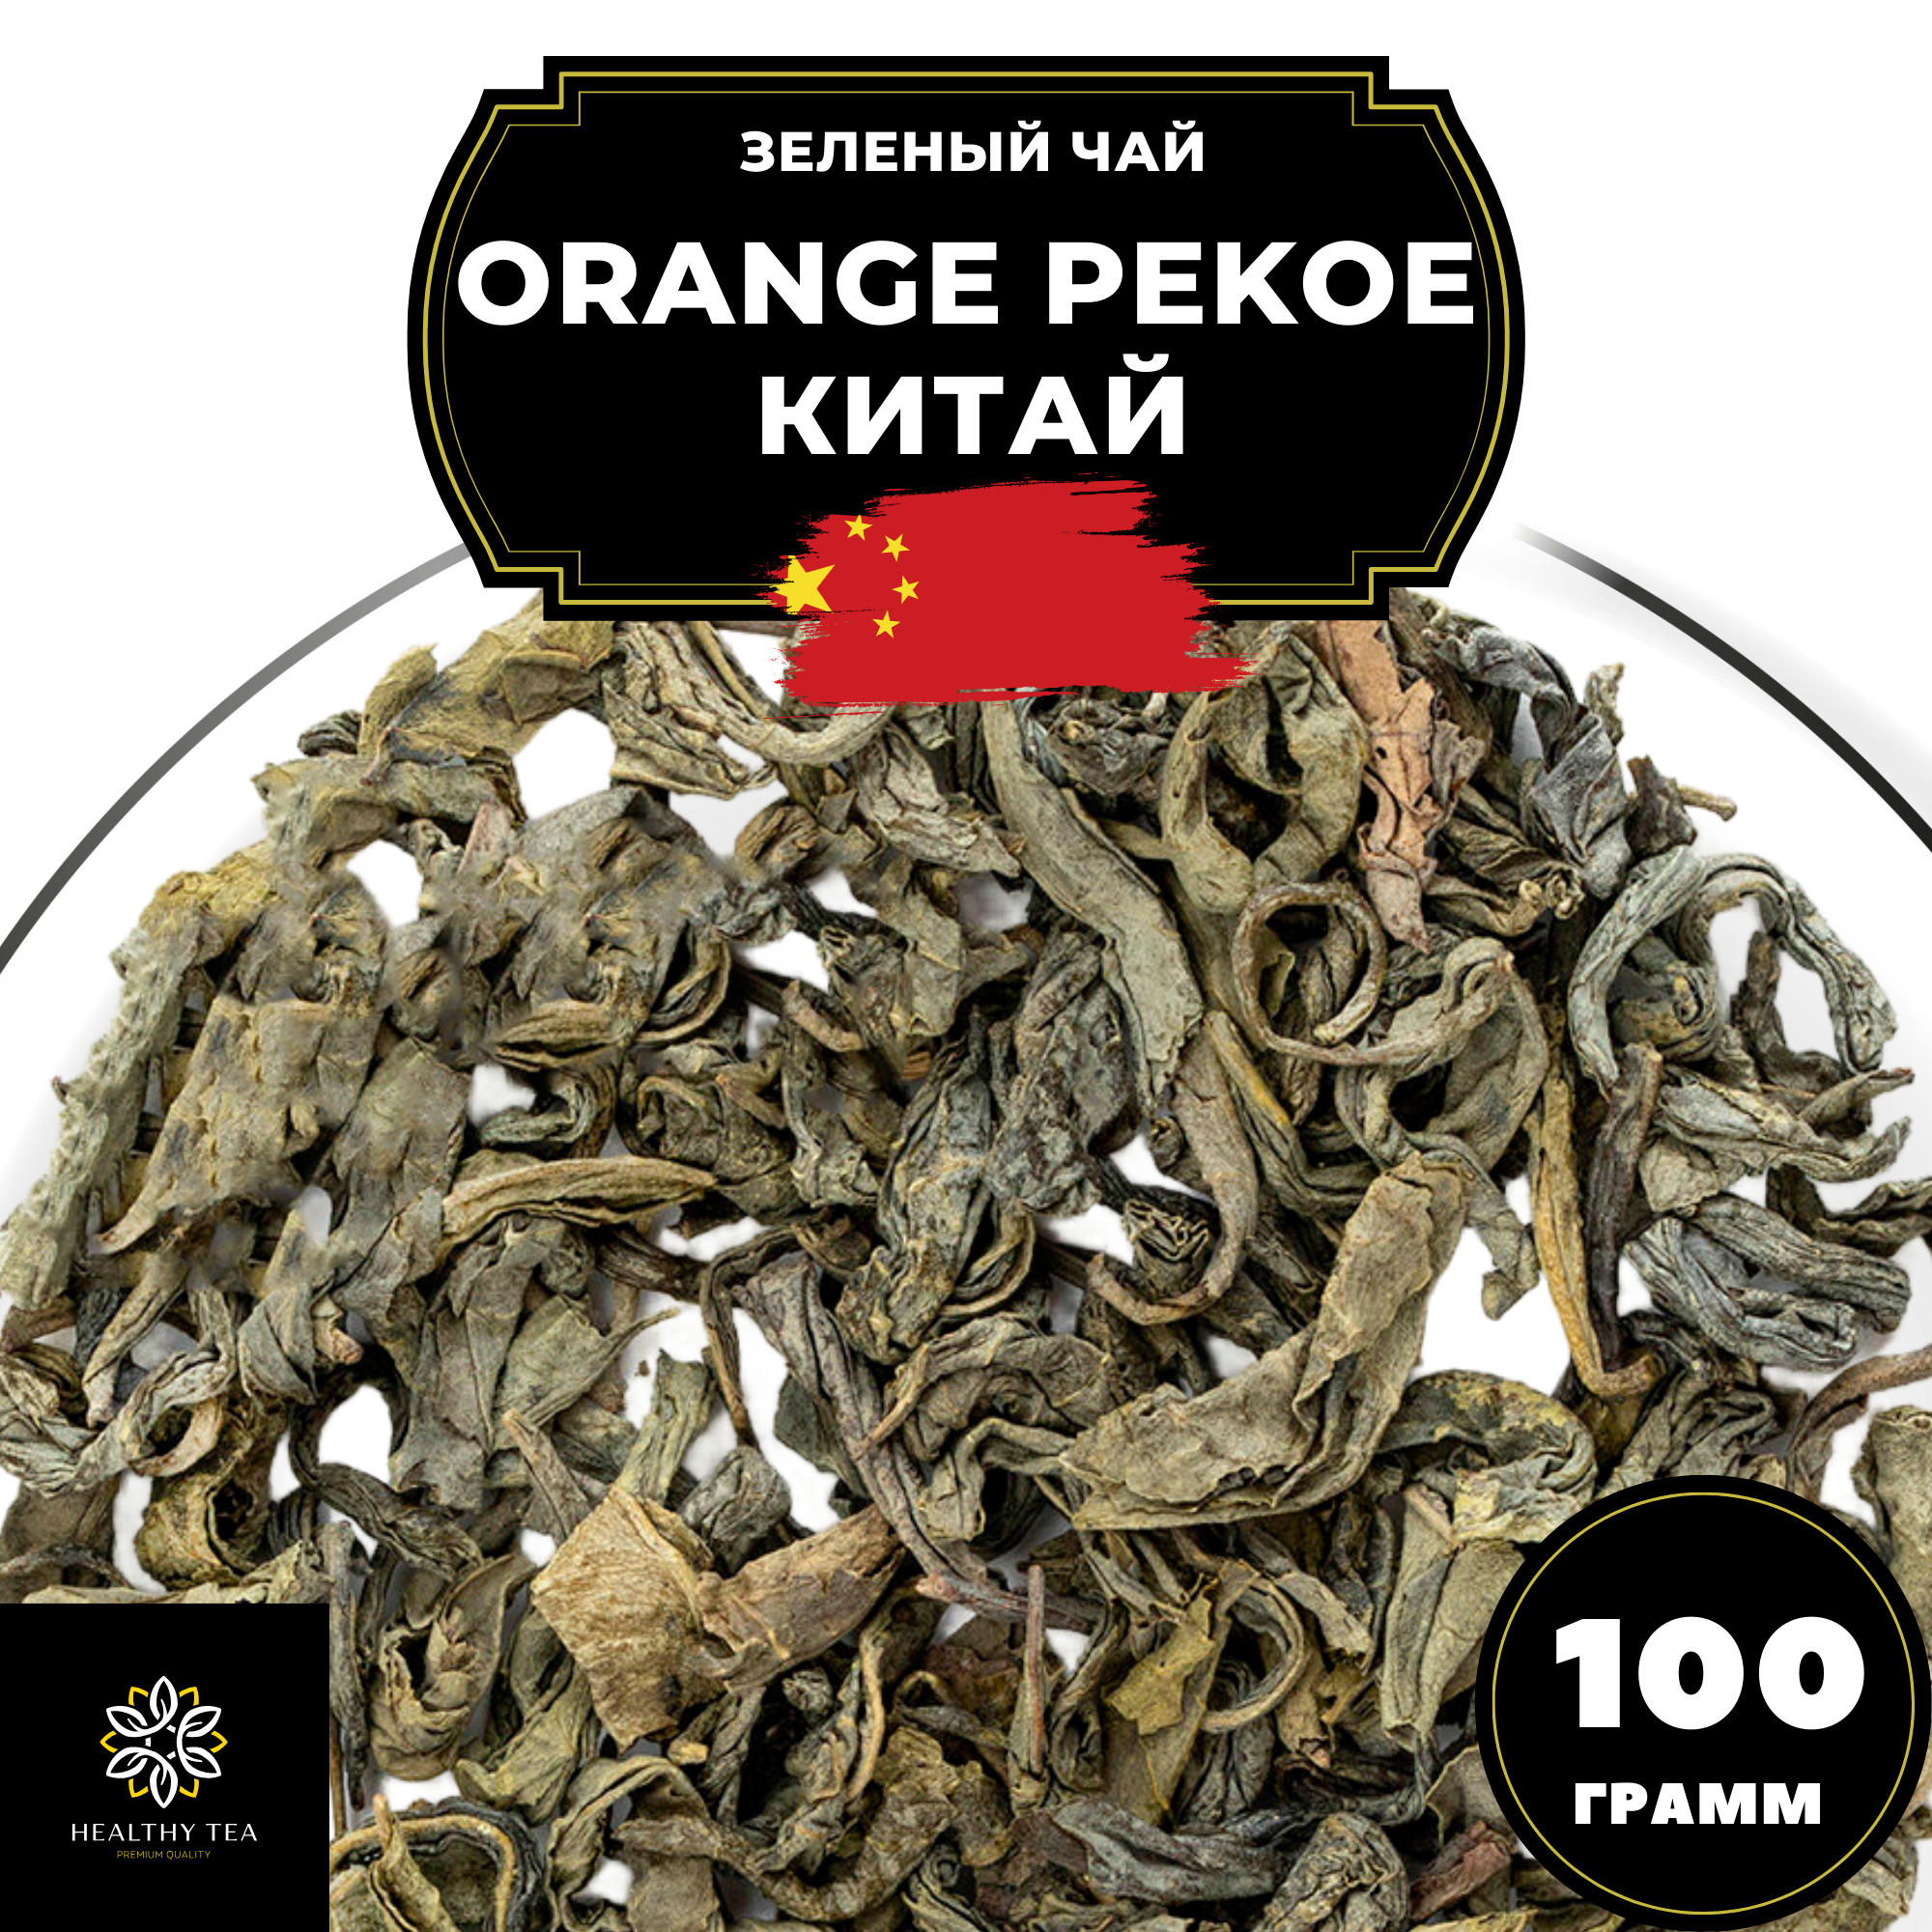 Китайский зеленый чай без добавок Orange Pekoe (Китай) Полезный чай / HEALTHY TEA, 100 г